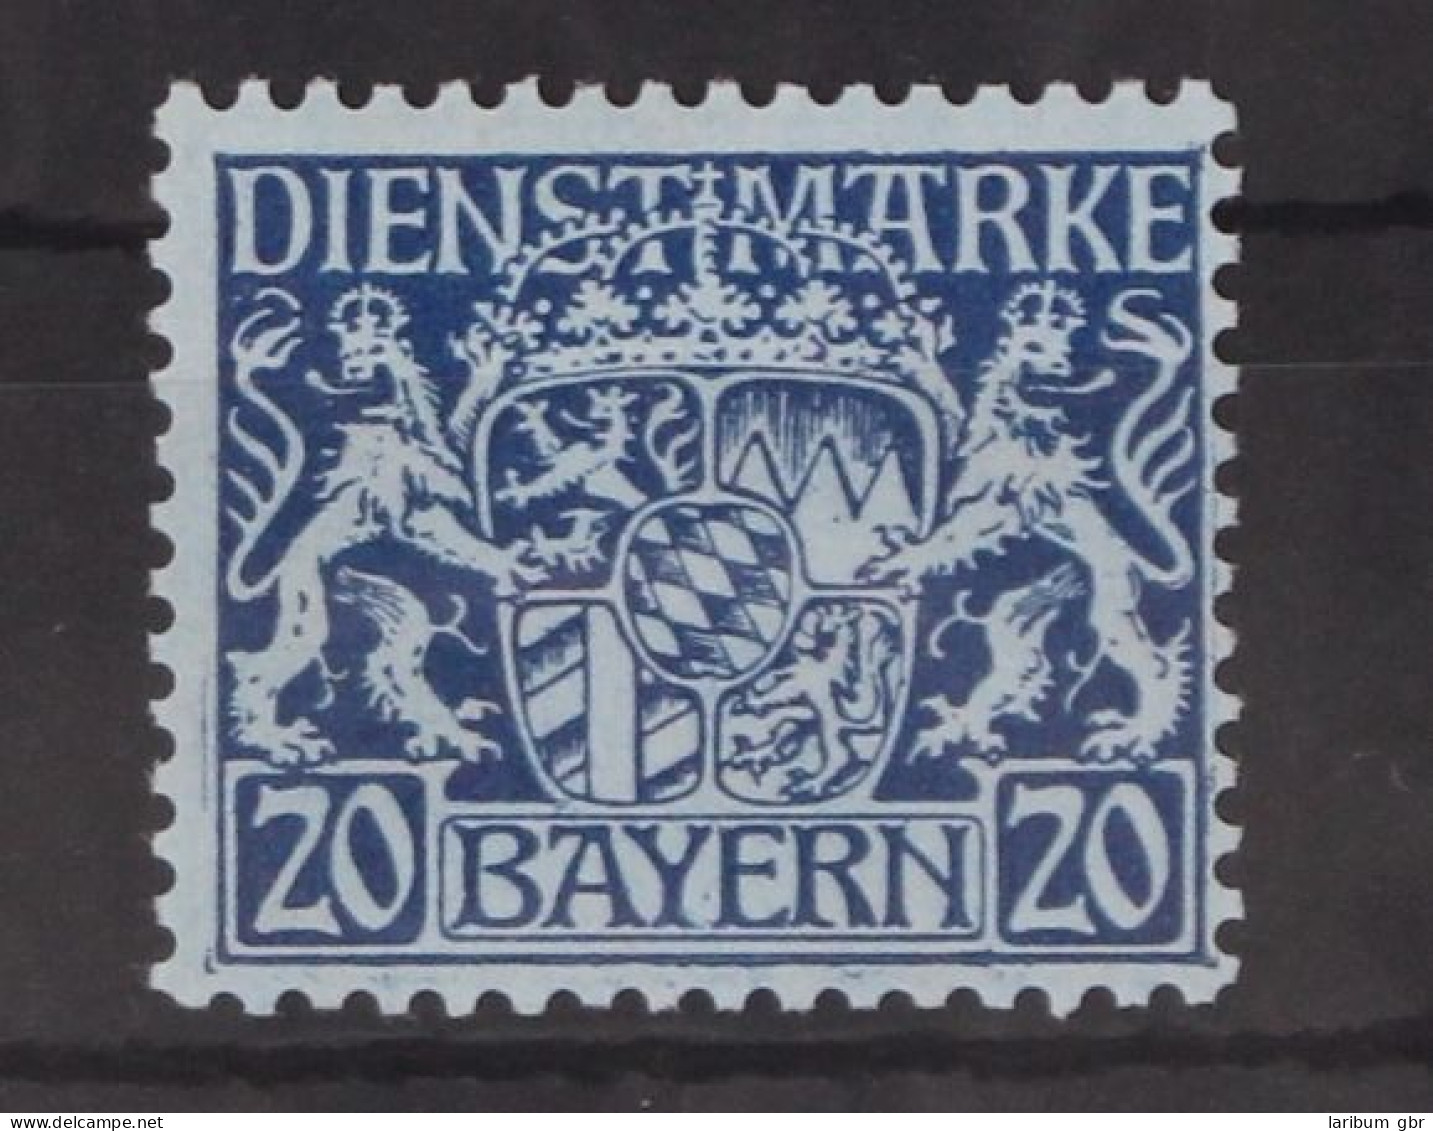 Bayern Dienstmarken 20 Postfrisch #GM098 - Ungebraucht